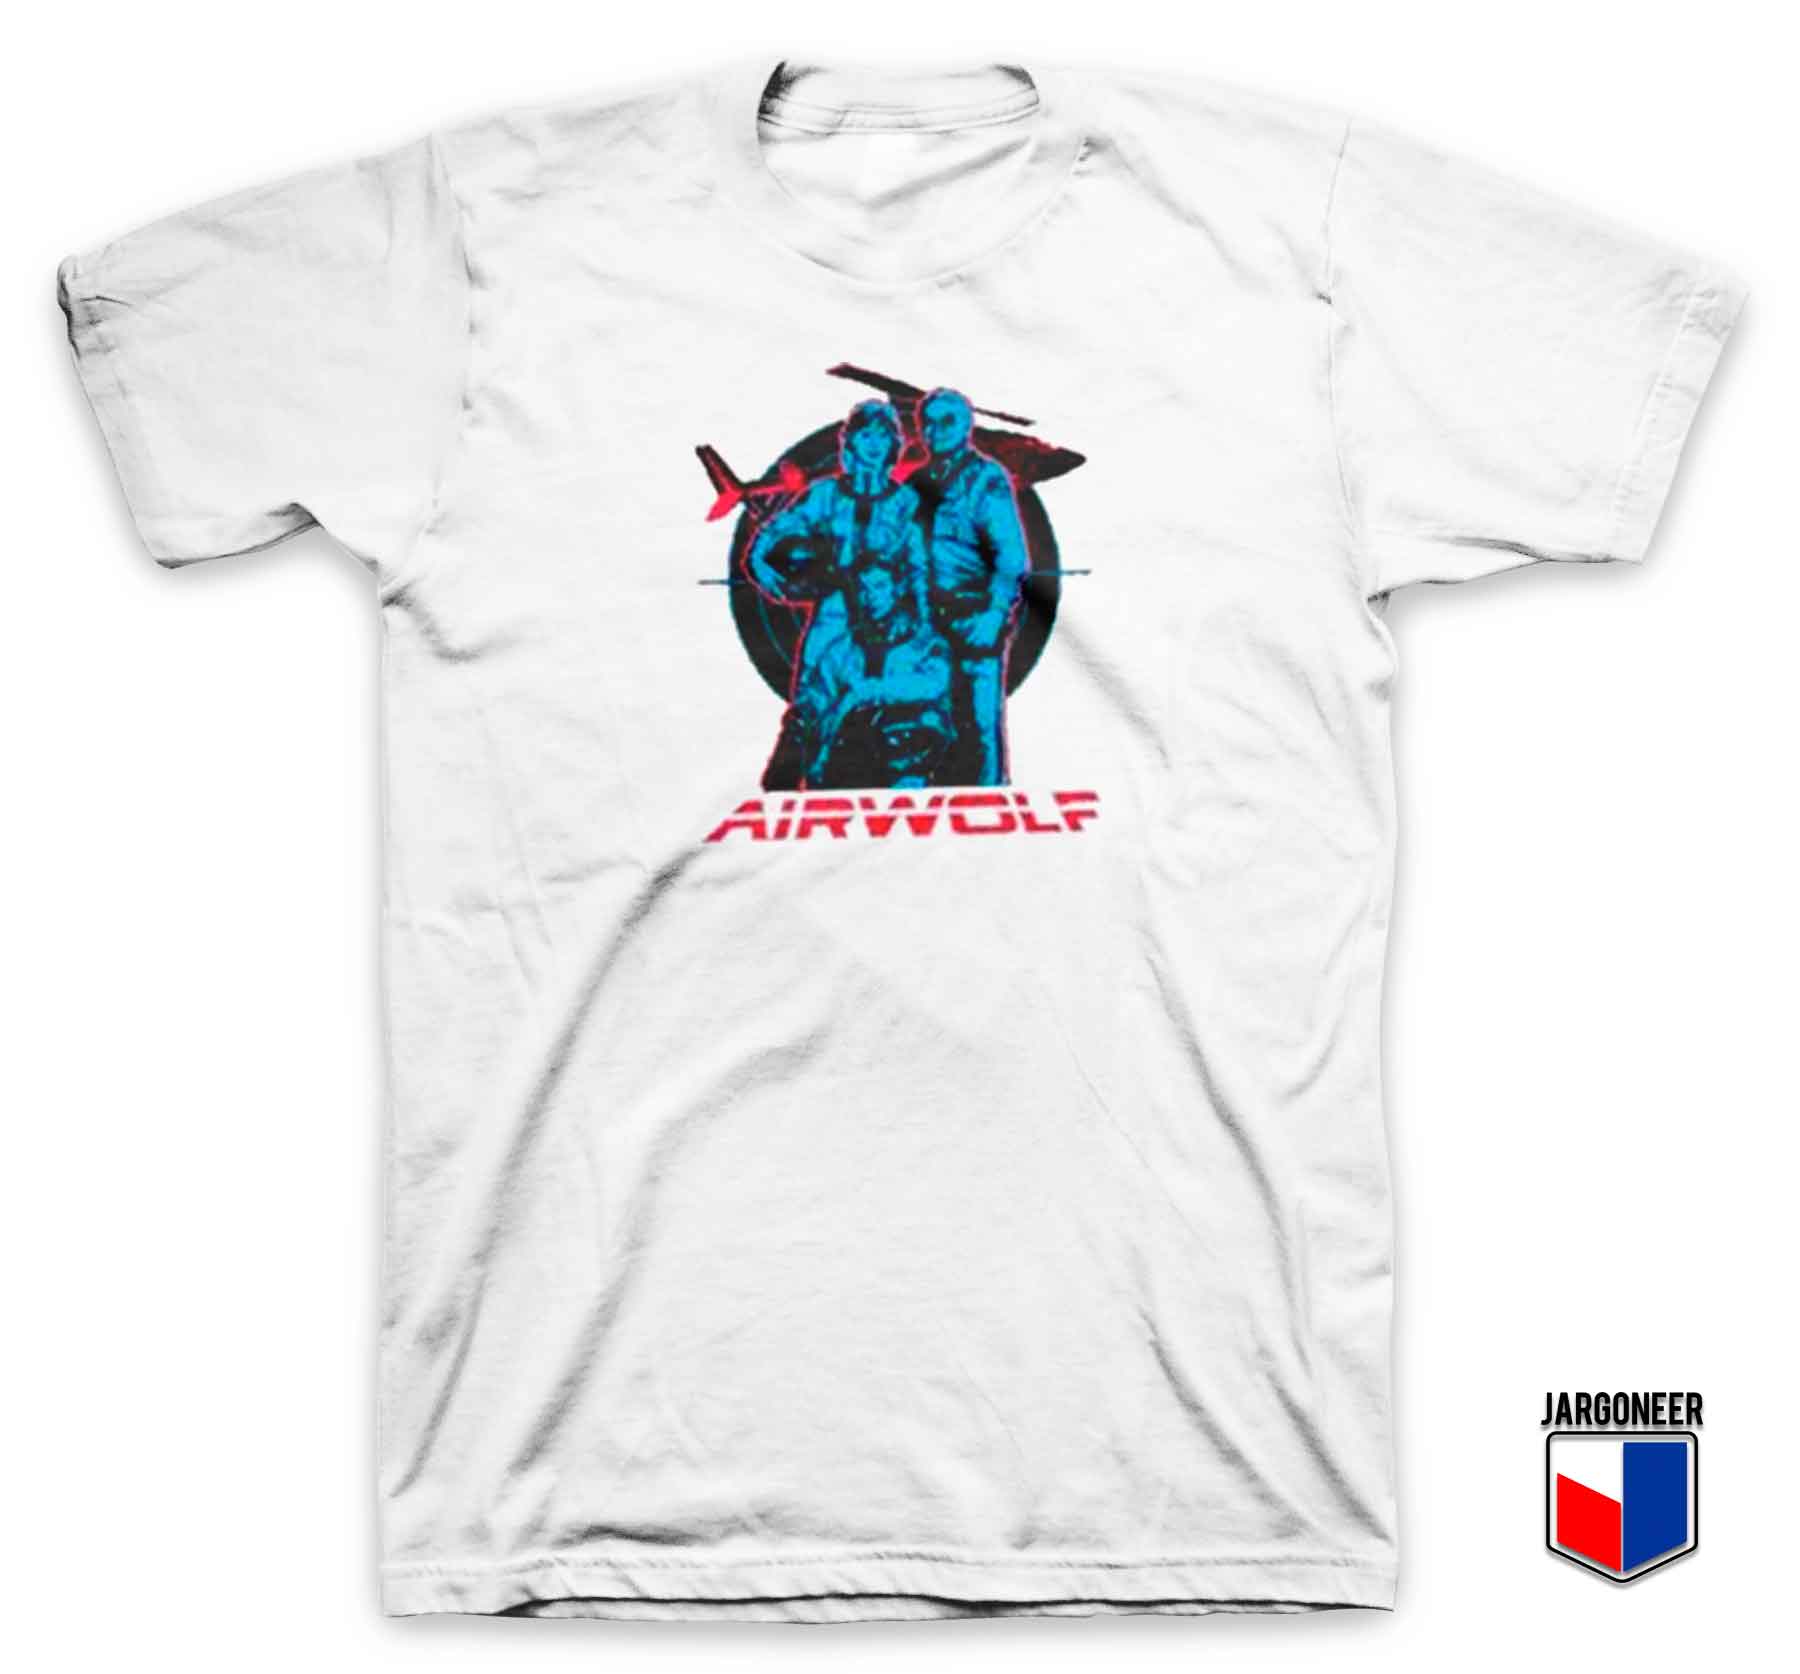 Cast Airwolf - Shop Unique Graphic Cool Shirt Designs